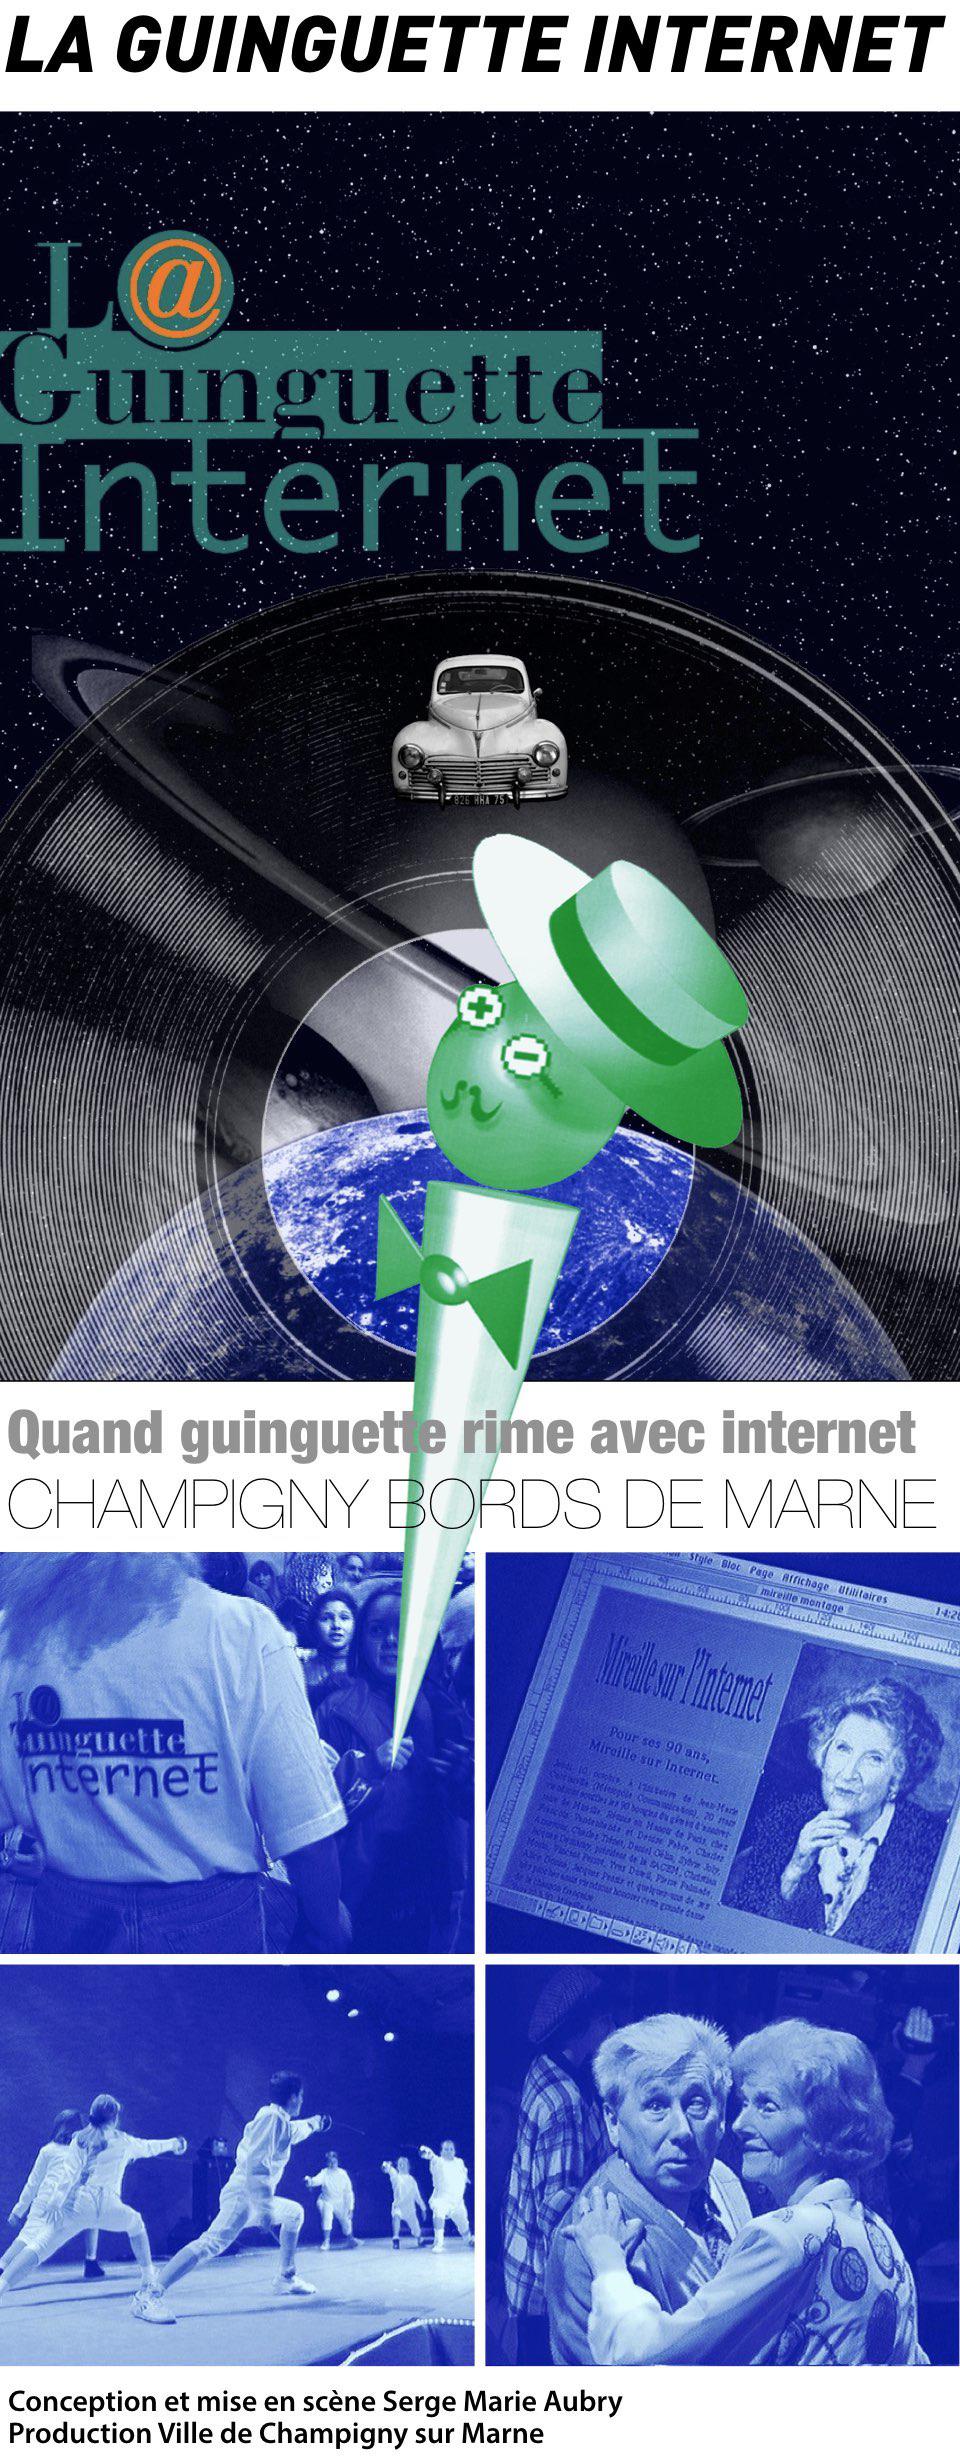 La Guinguette Internet / Serge Marie Aubry 